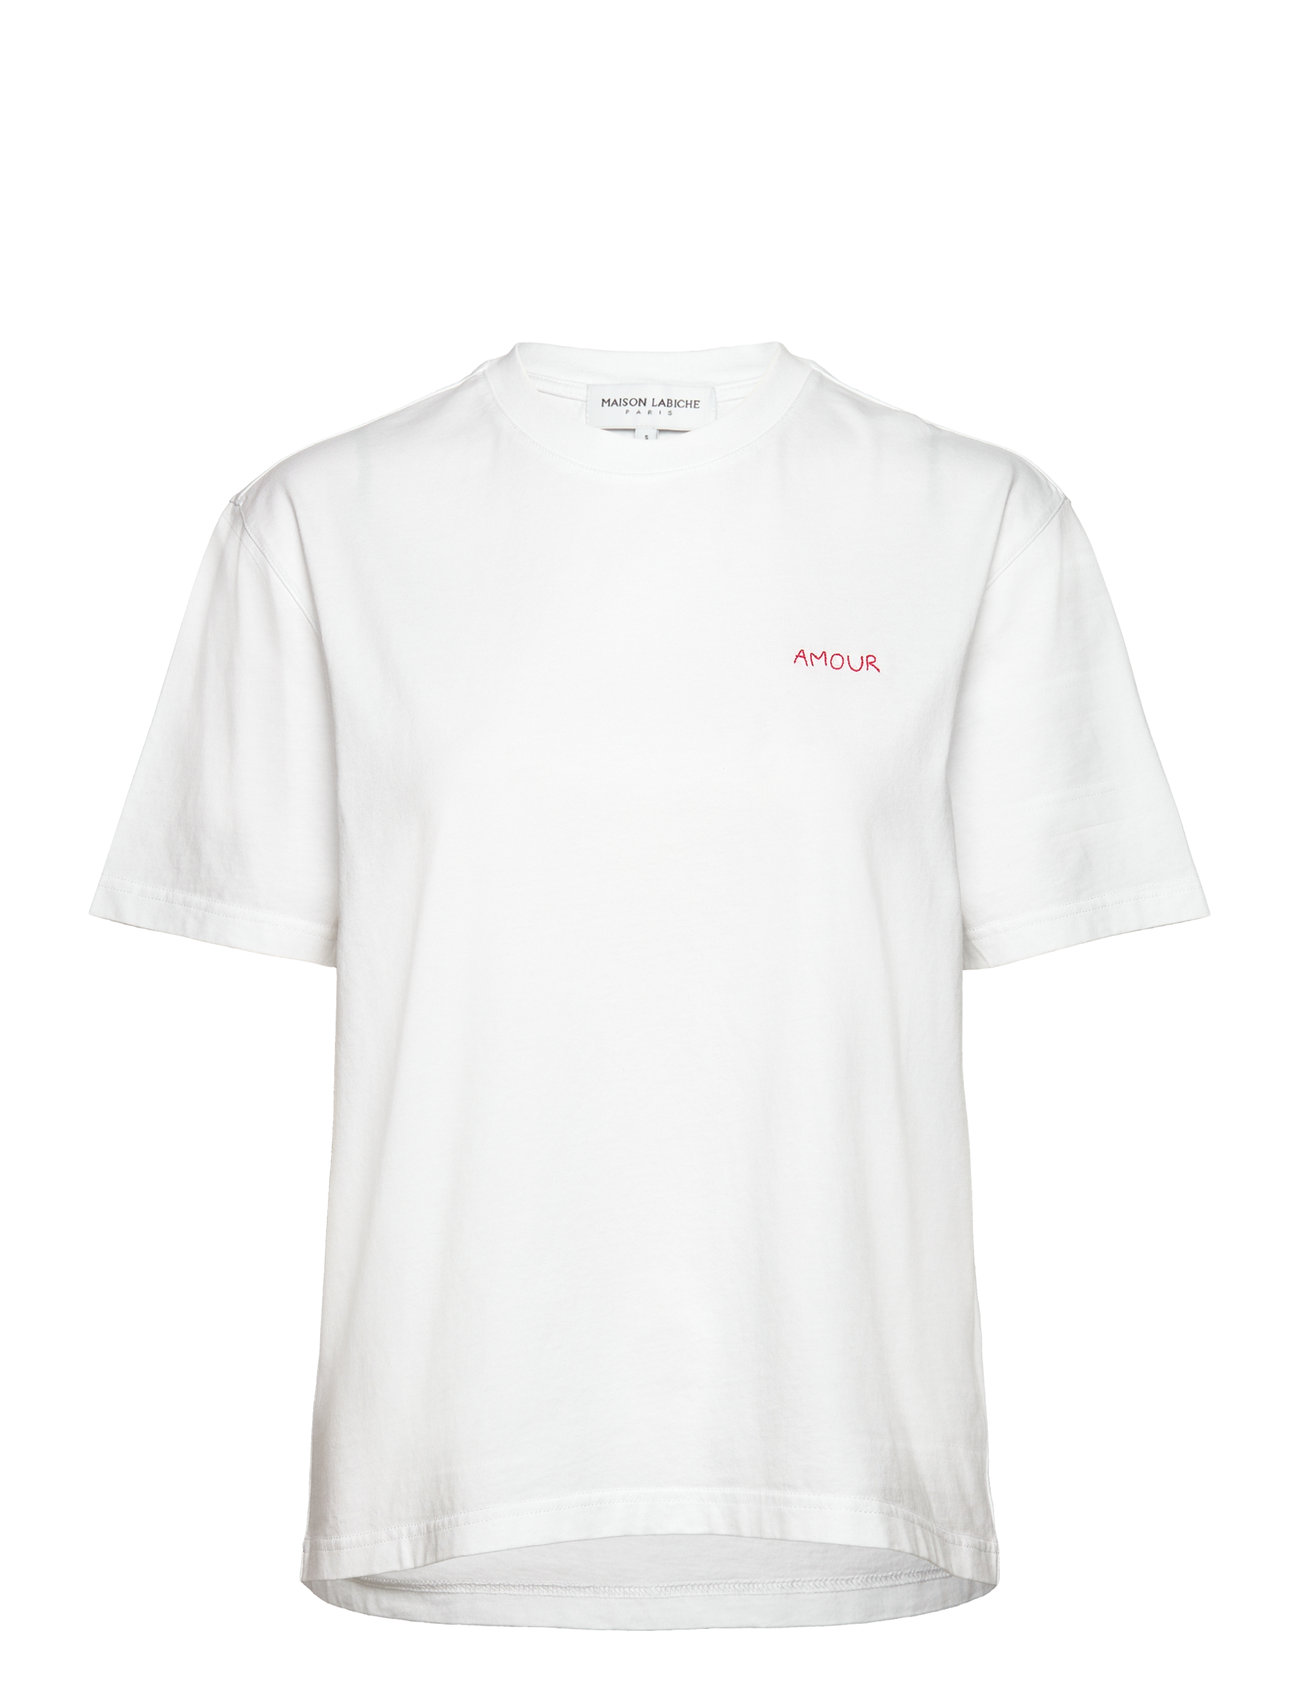 Popincourt Amour/Gots Tops T-shirts & Tops Short-sleeved White Maison Labiche Paris